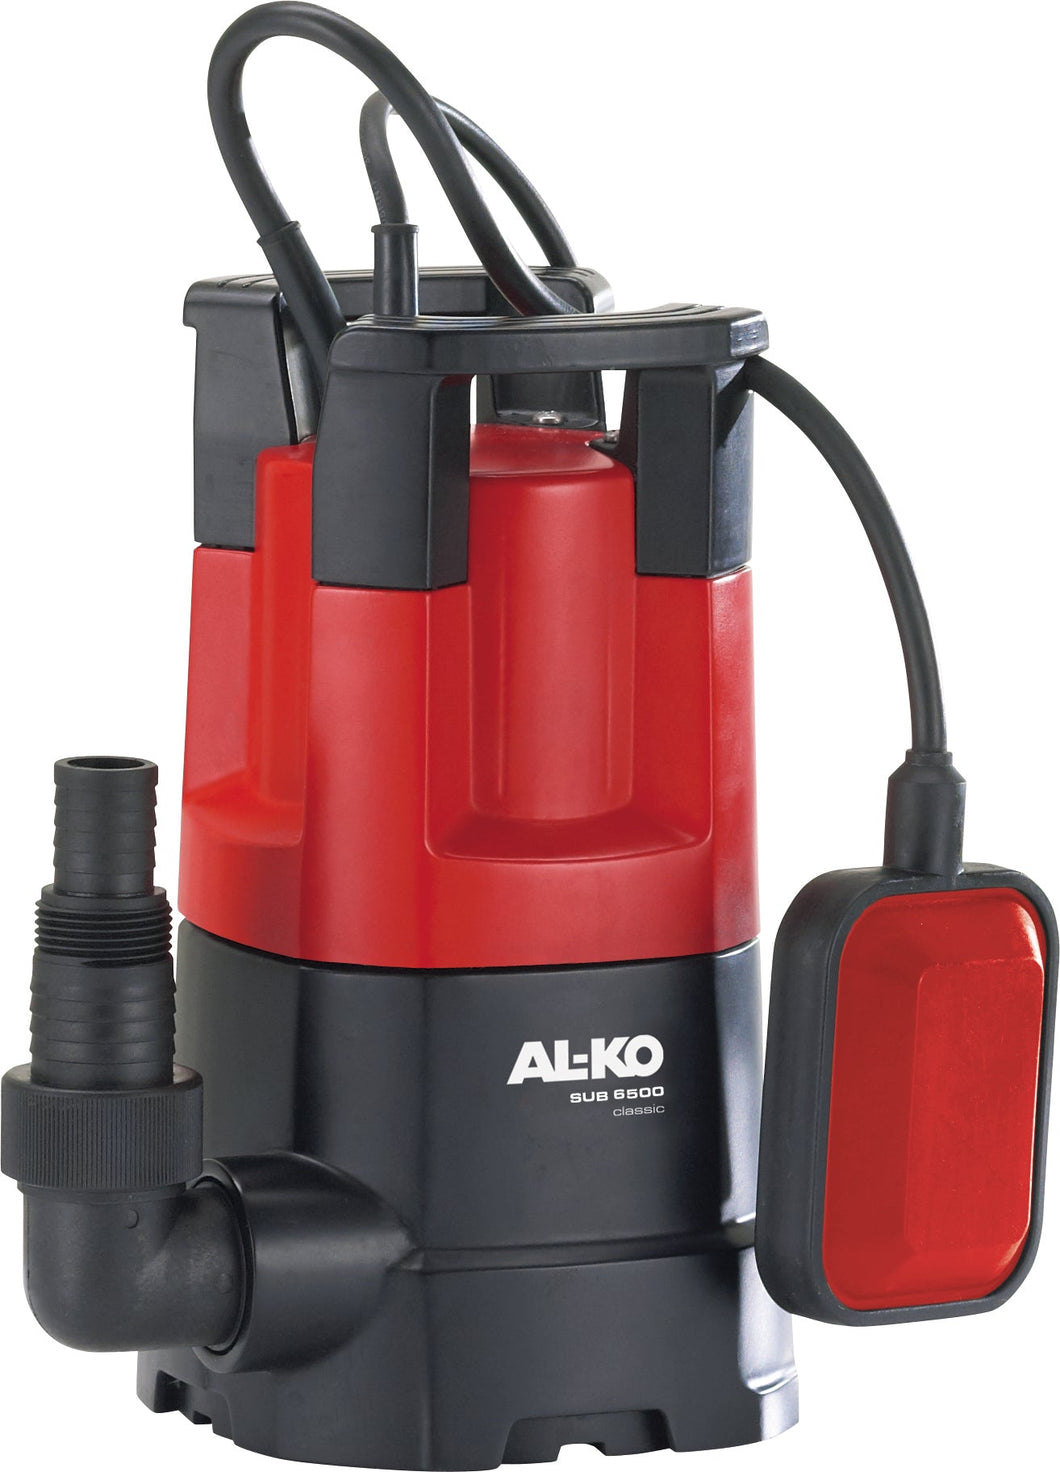 AL-KO SUB 6500 Classic Water Pump